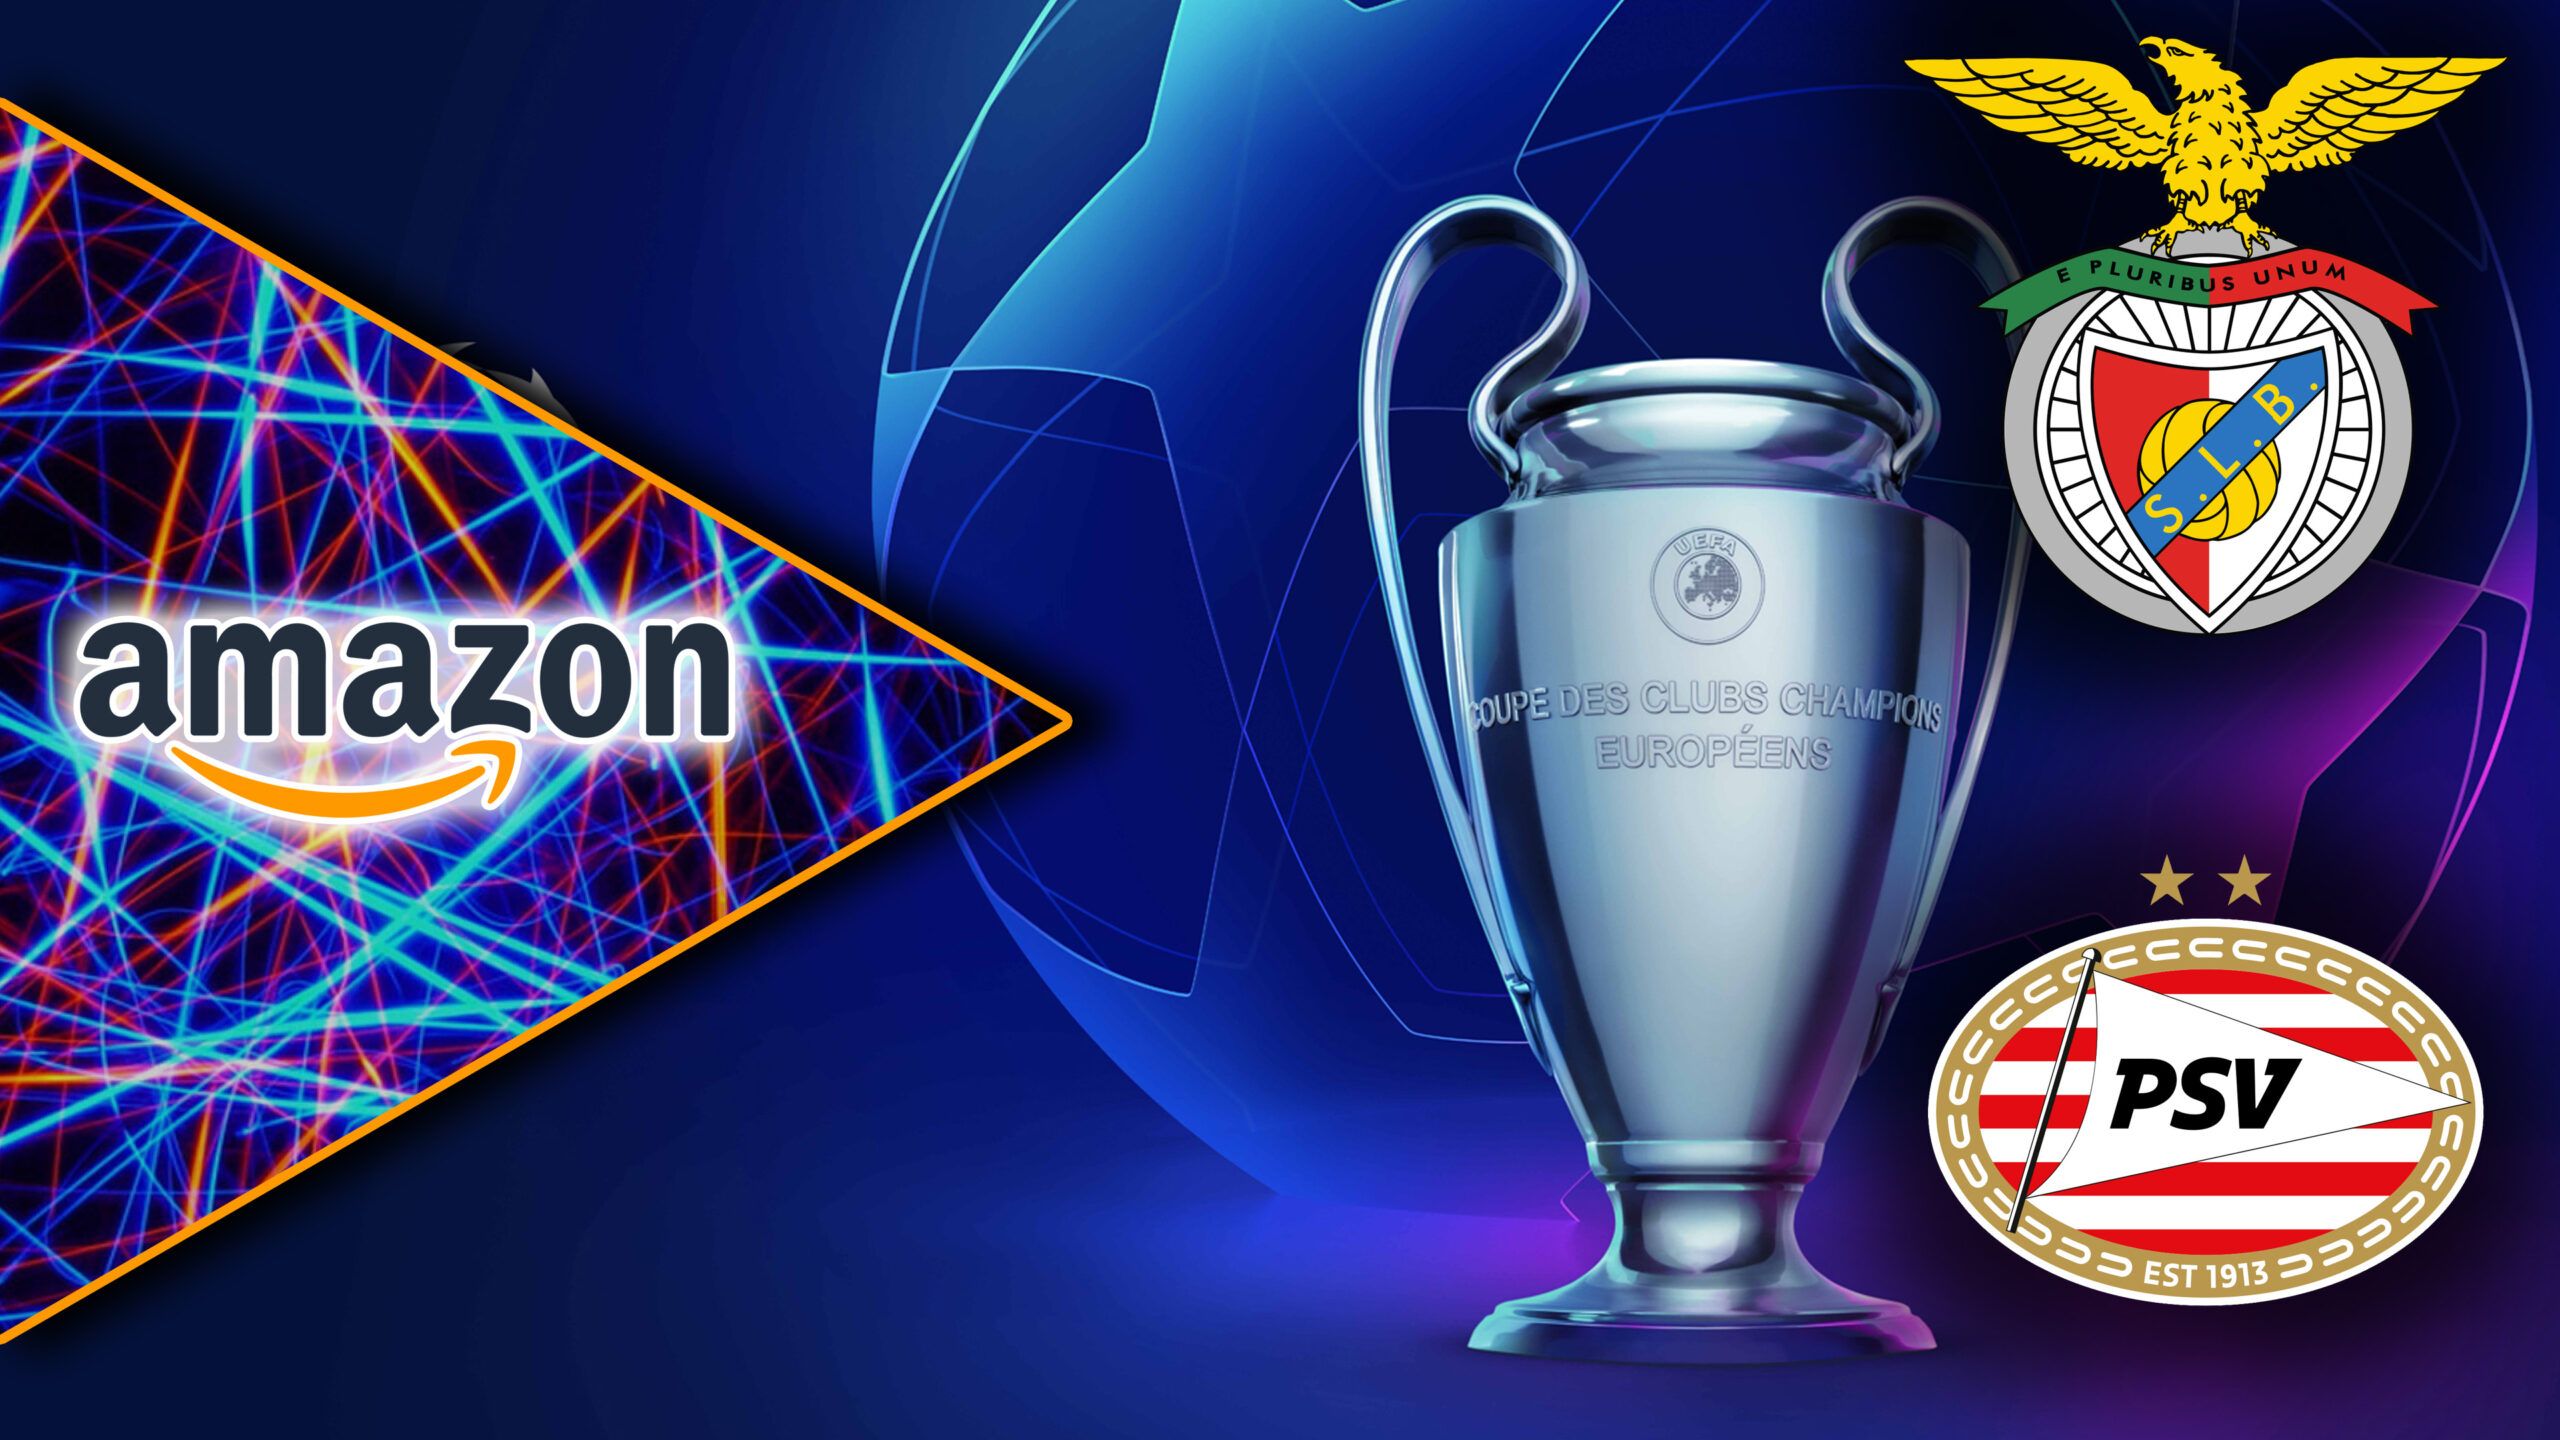 La Champions League in 4K HDR sbarca su Amazon Prime Video ...